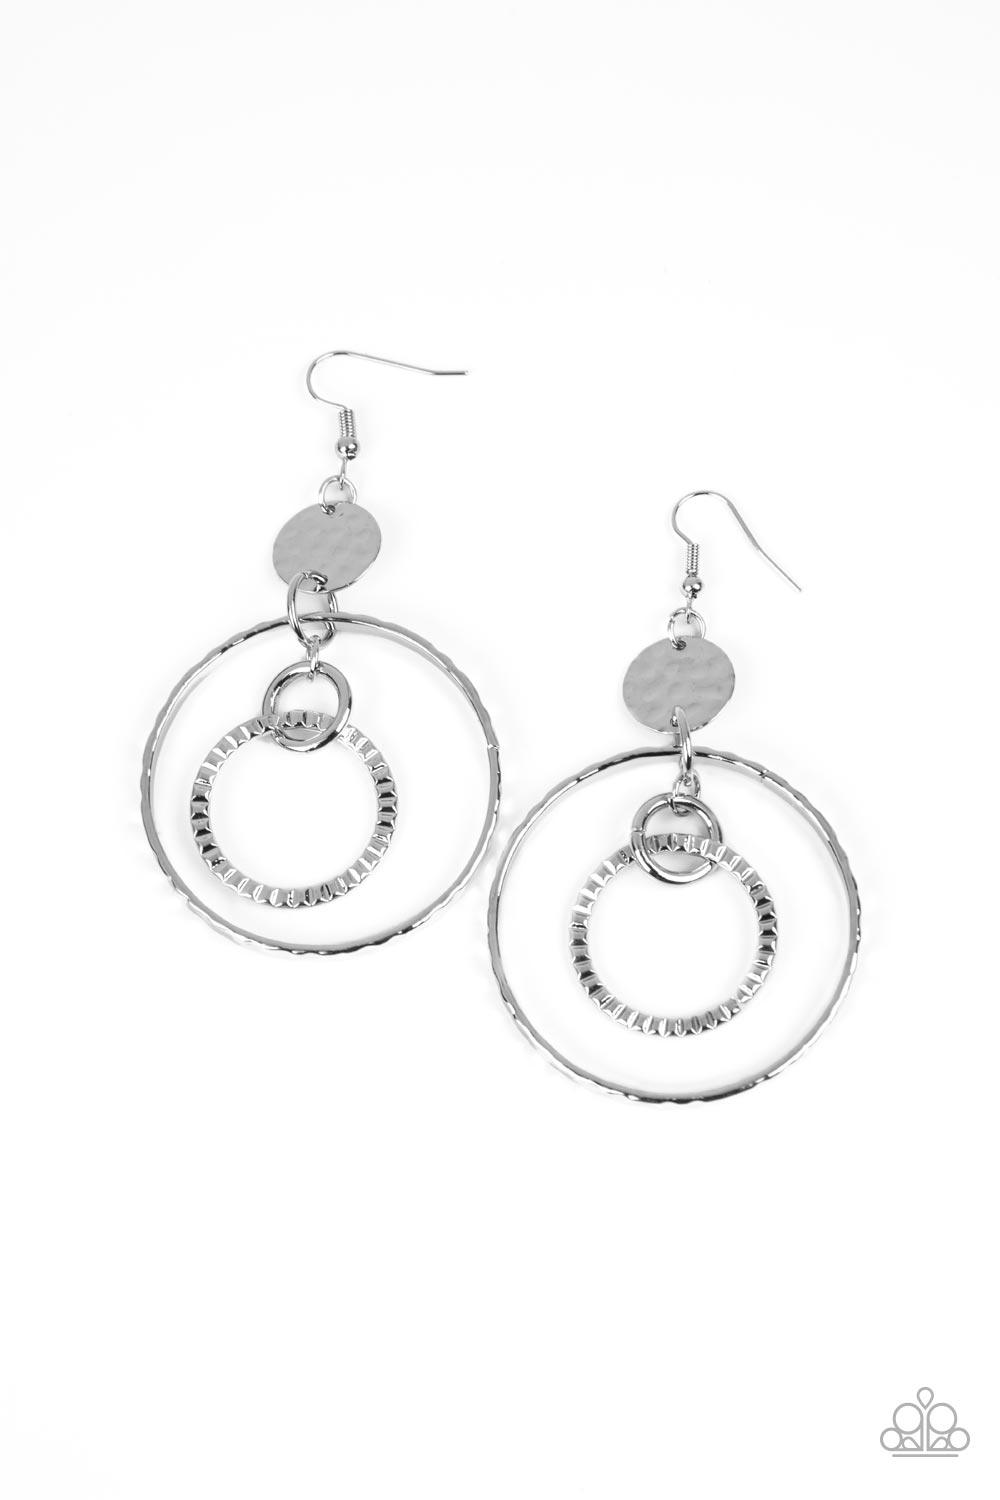 Terra Incognita Silver Earrings - Jewelry by Bretta